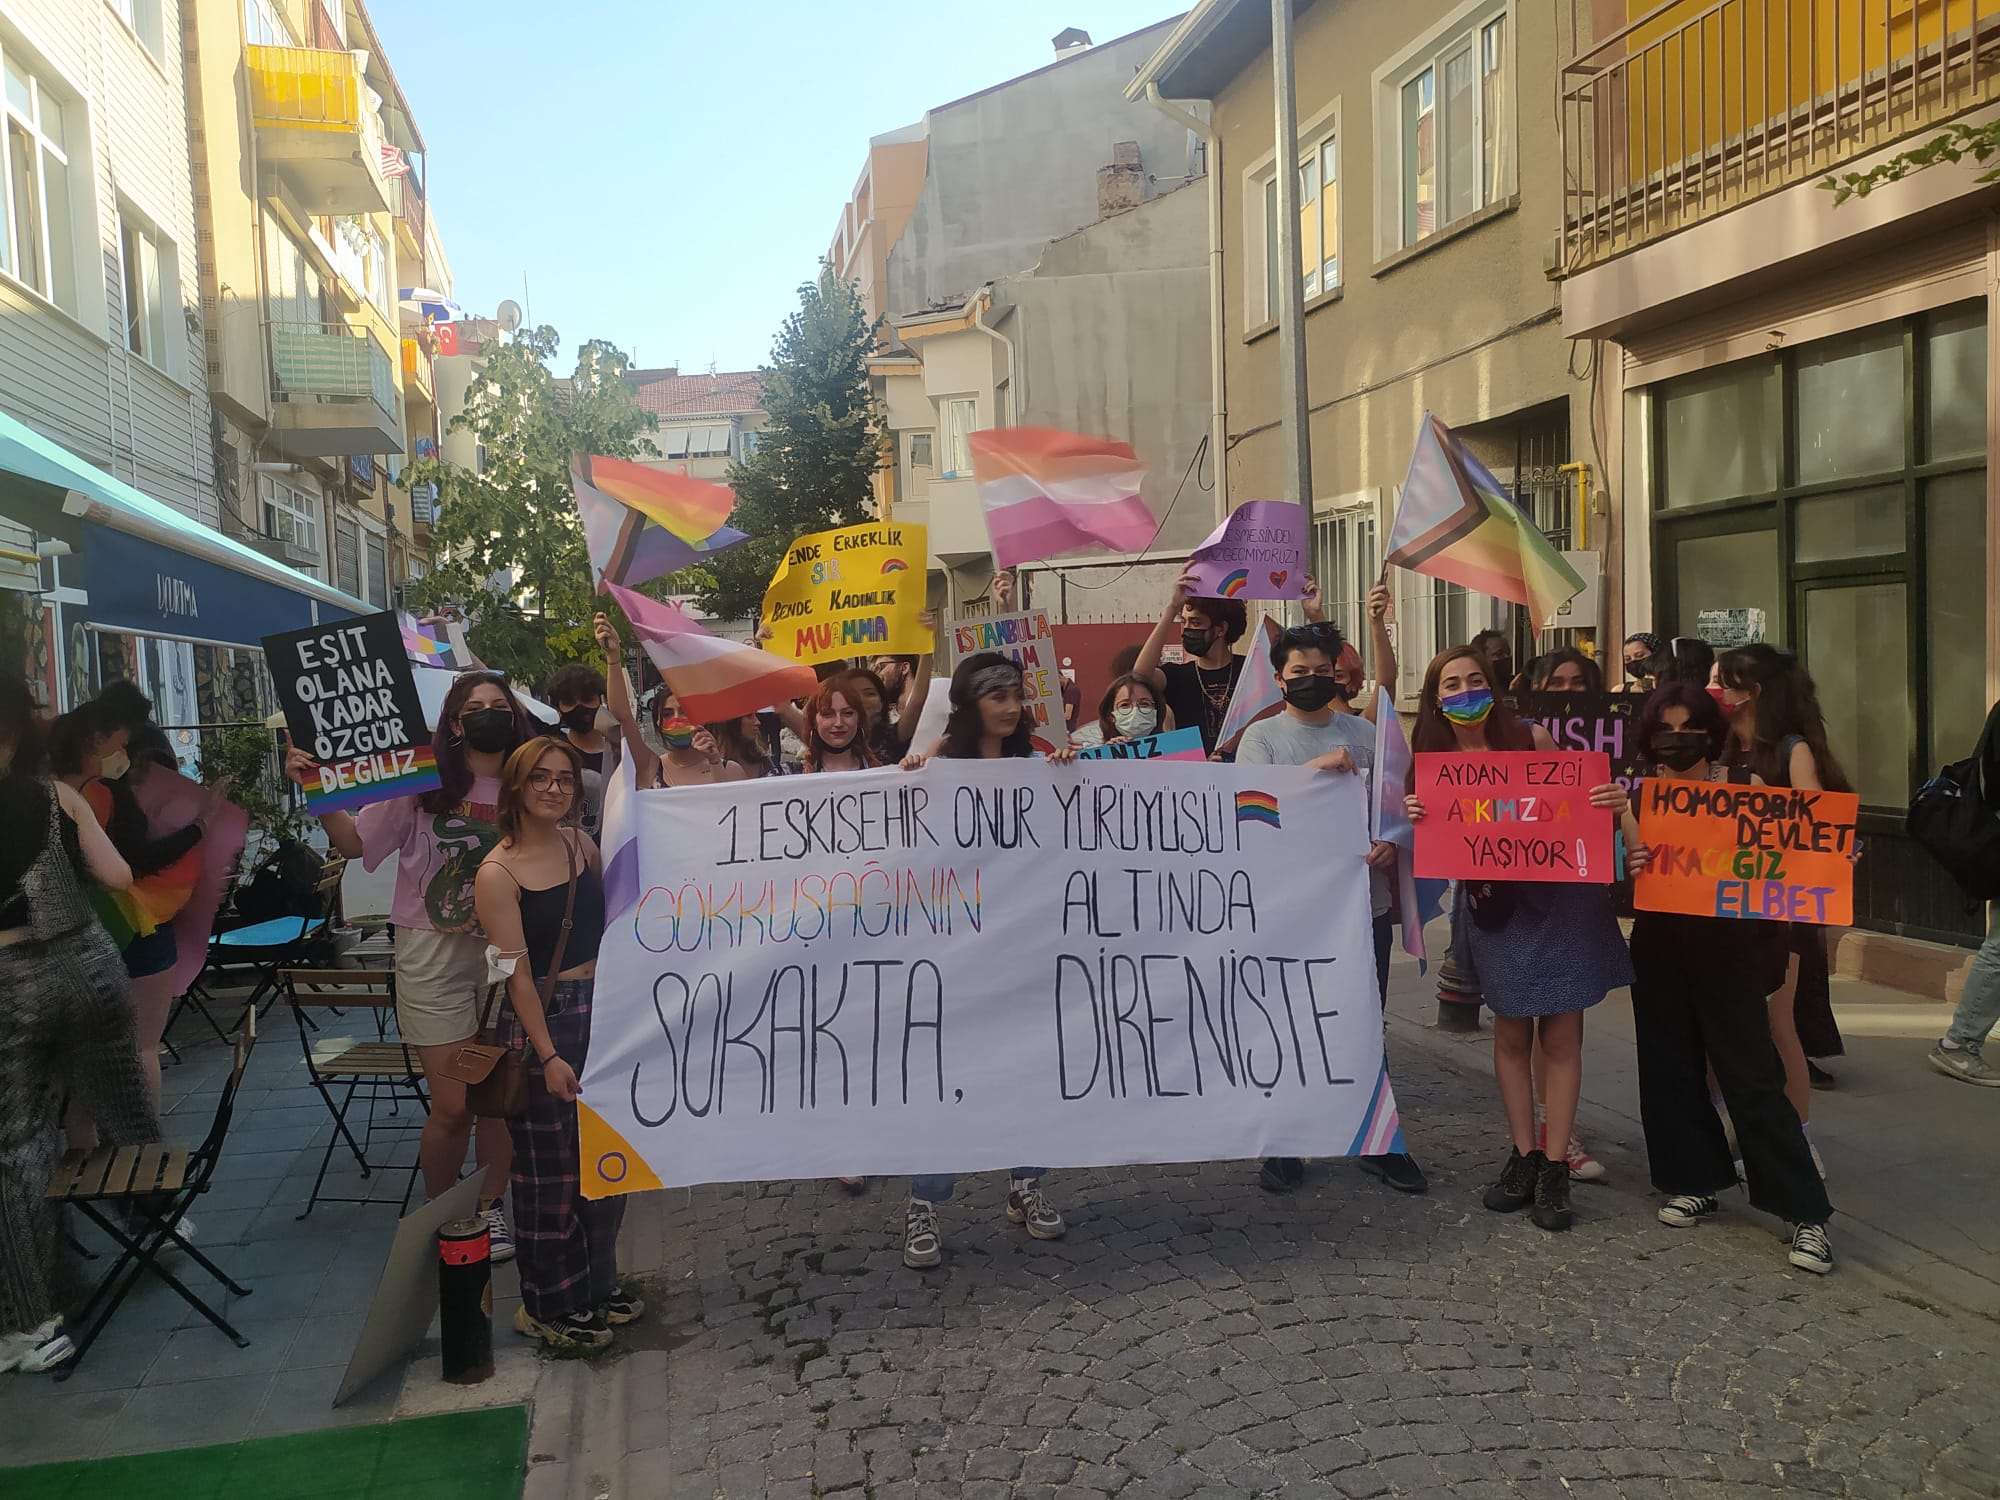 Eskişehir’de polis, Onur Yürüyüşü başlamadan aktivistleri gözaltına almaya başladı! | Kaos GL - LGBTİ+ Haber Portalı